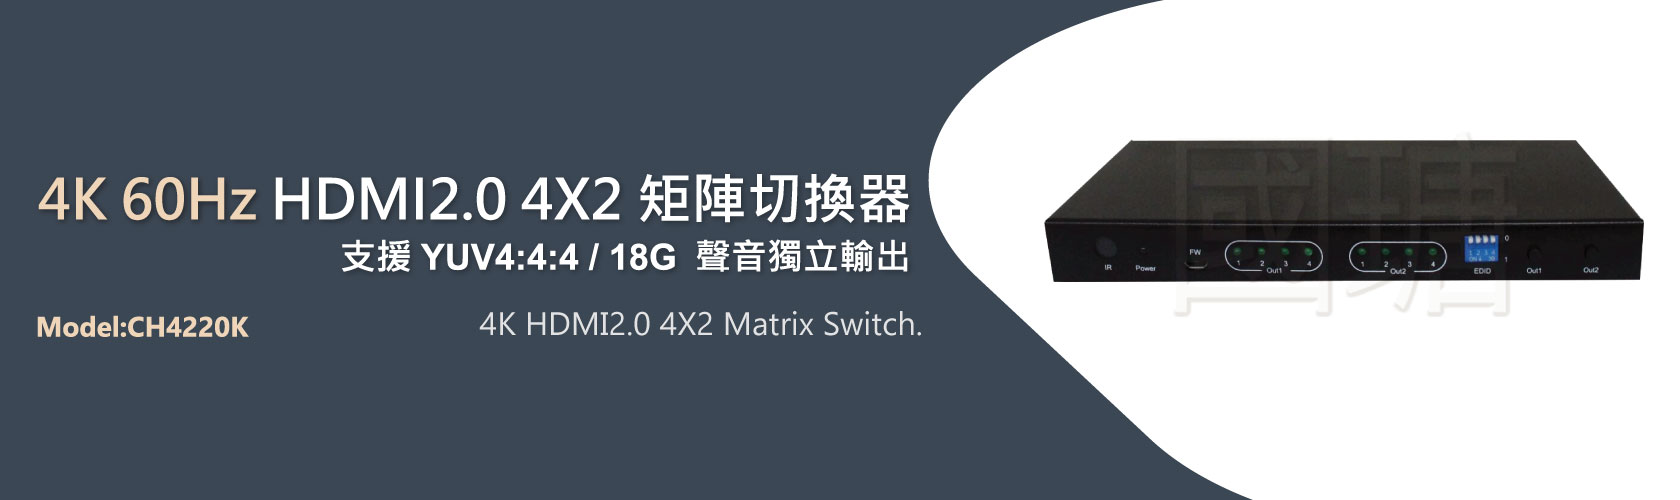 4進2出 HDMI2.0 4K60Hz矩陣交叉切換器